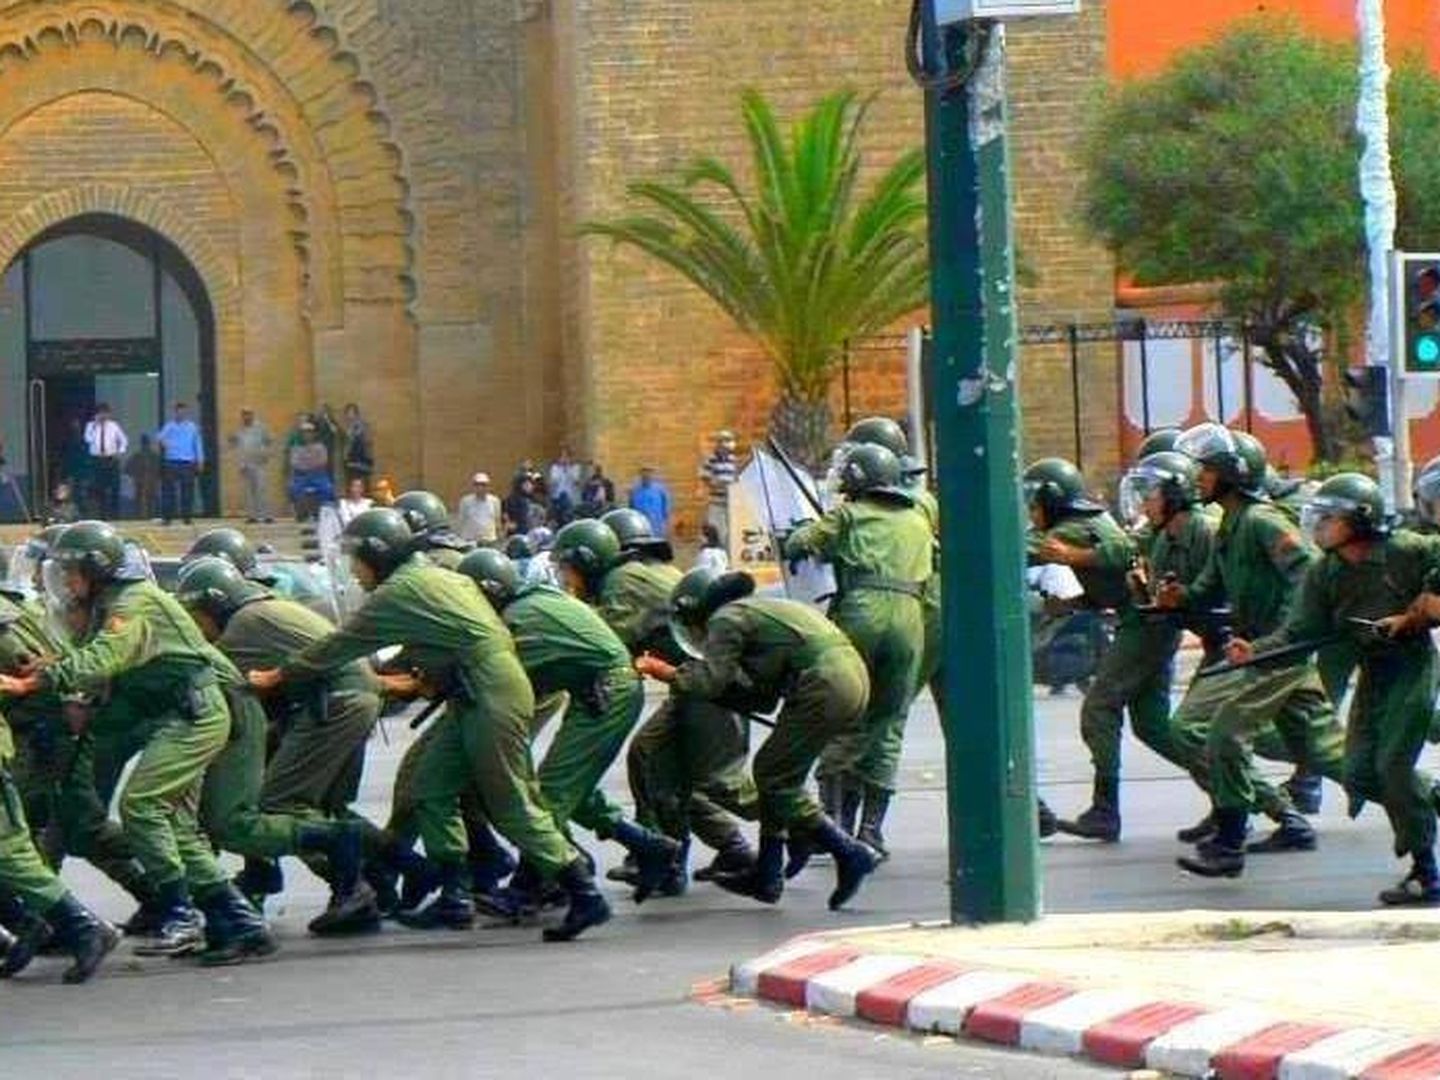 Intervención militar de las Fuerzas de Marruecos. (FB Fuerzas Marruecos)